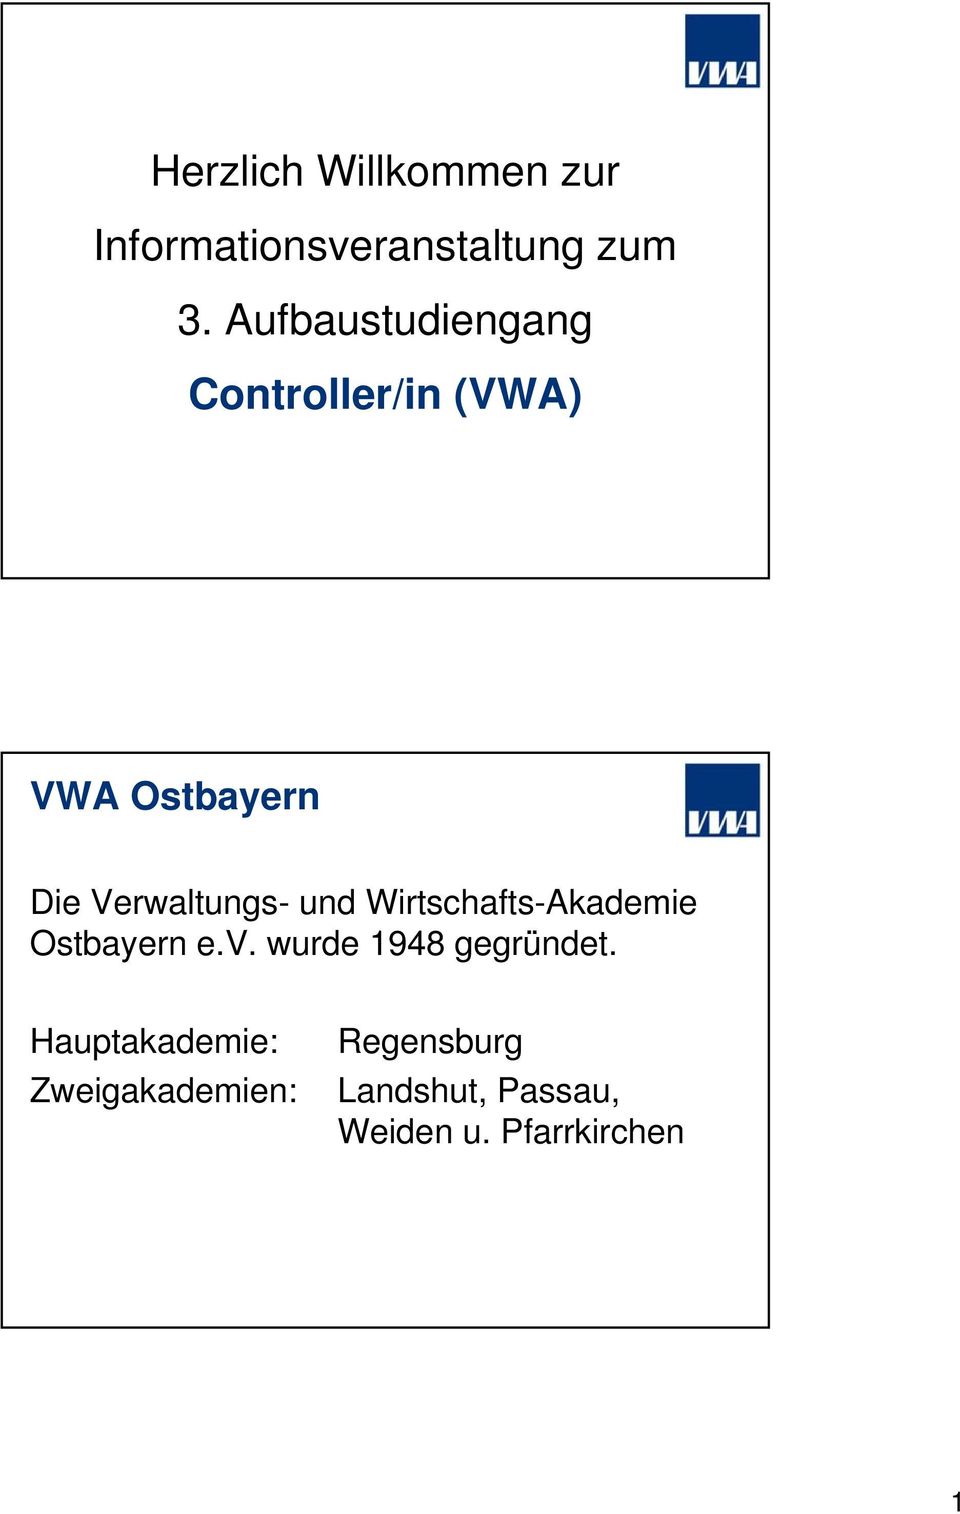 Verwaltungs- und Wirtschafts-Akademie Ostbayern e.v.